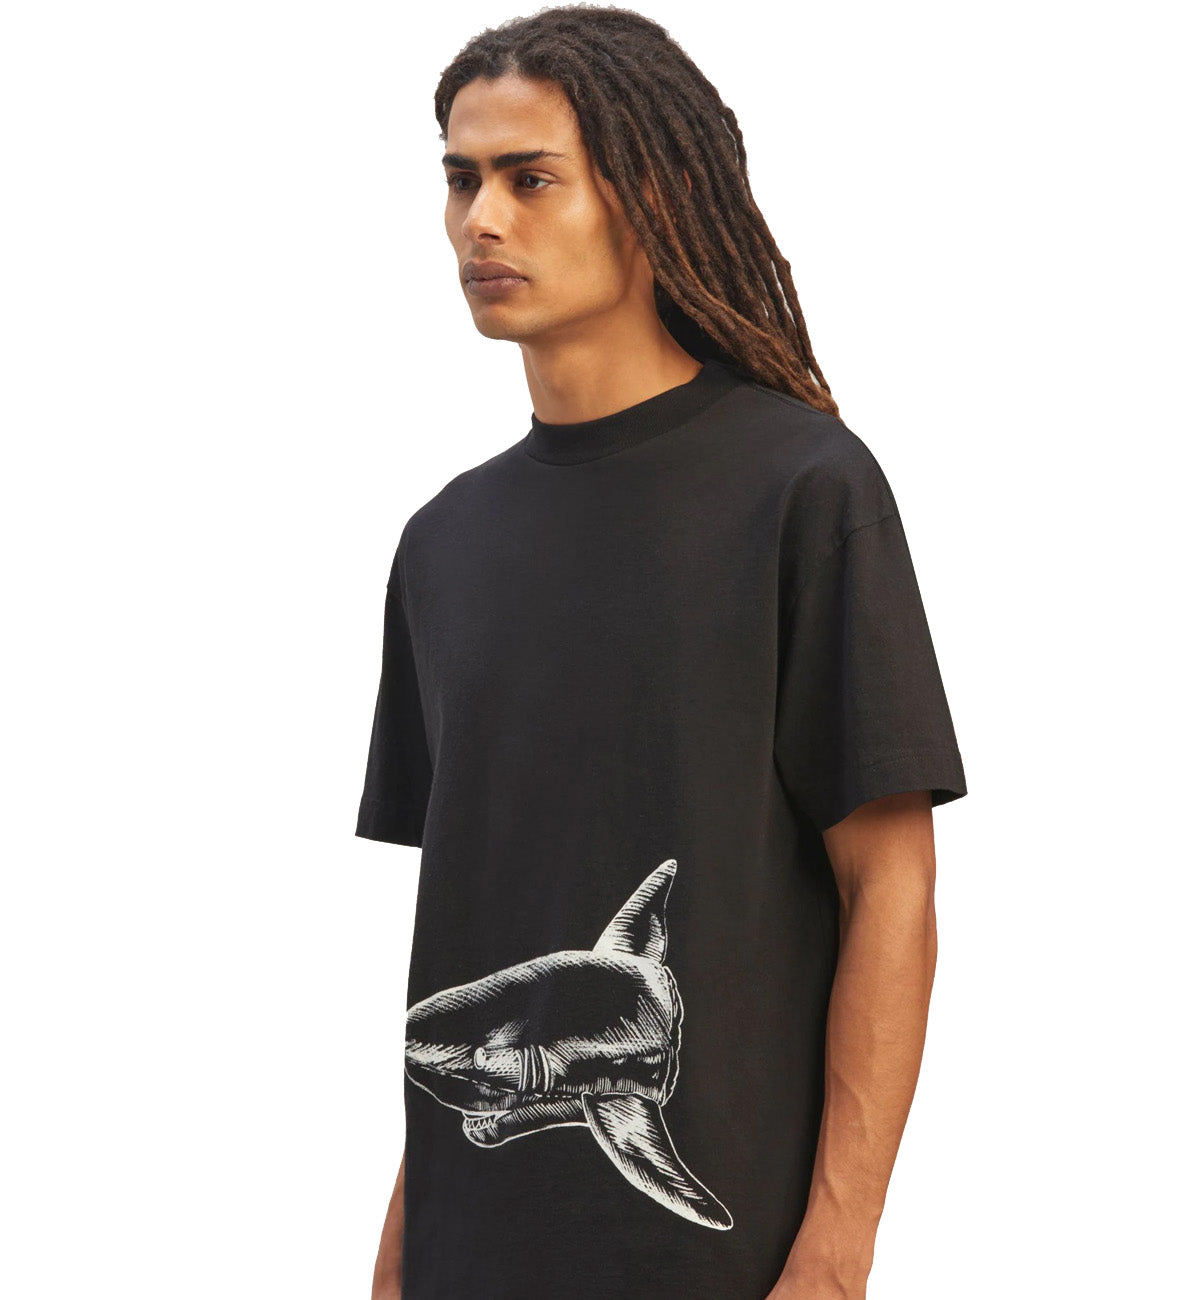 Palm Angels Broken Shark Classic T-Shirt (Black)